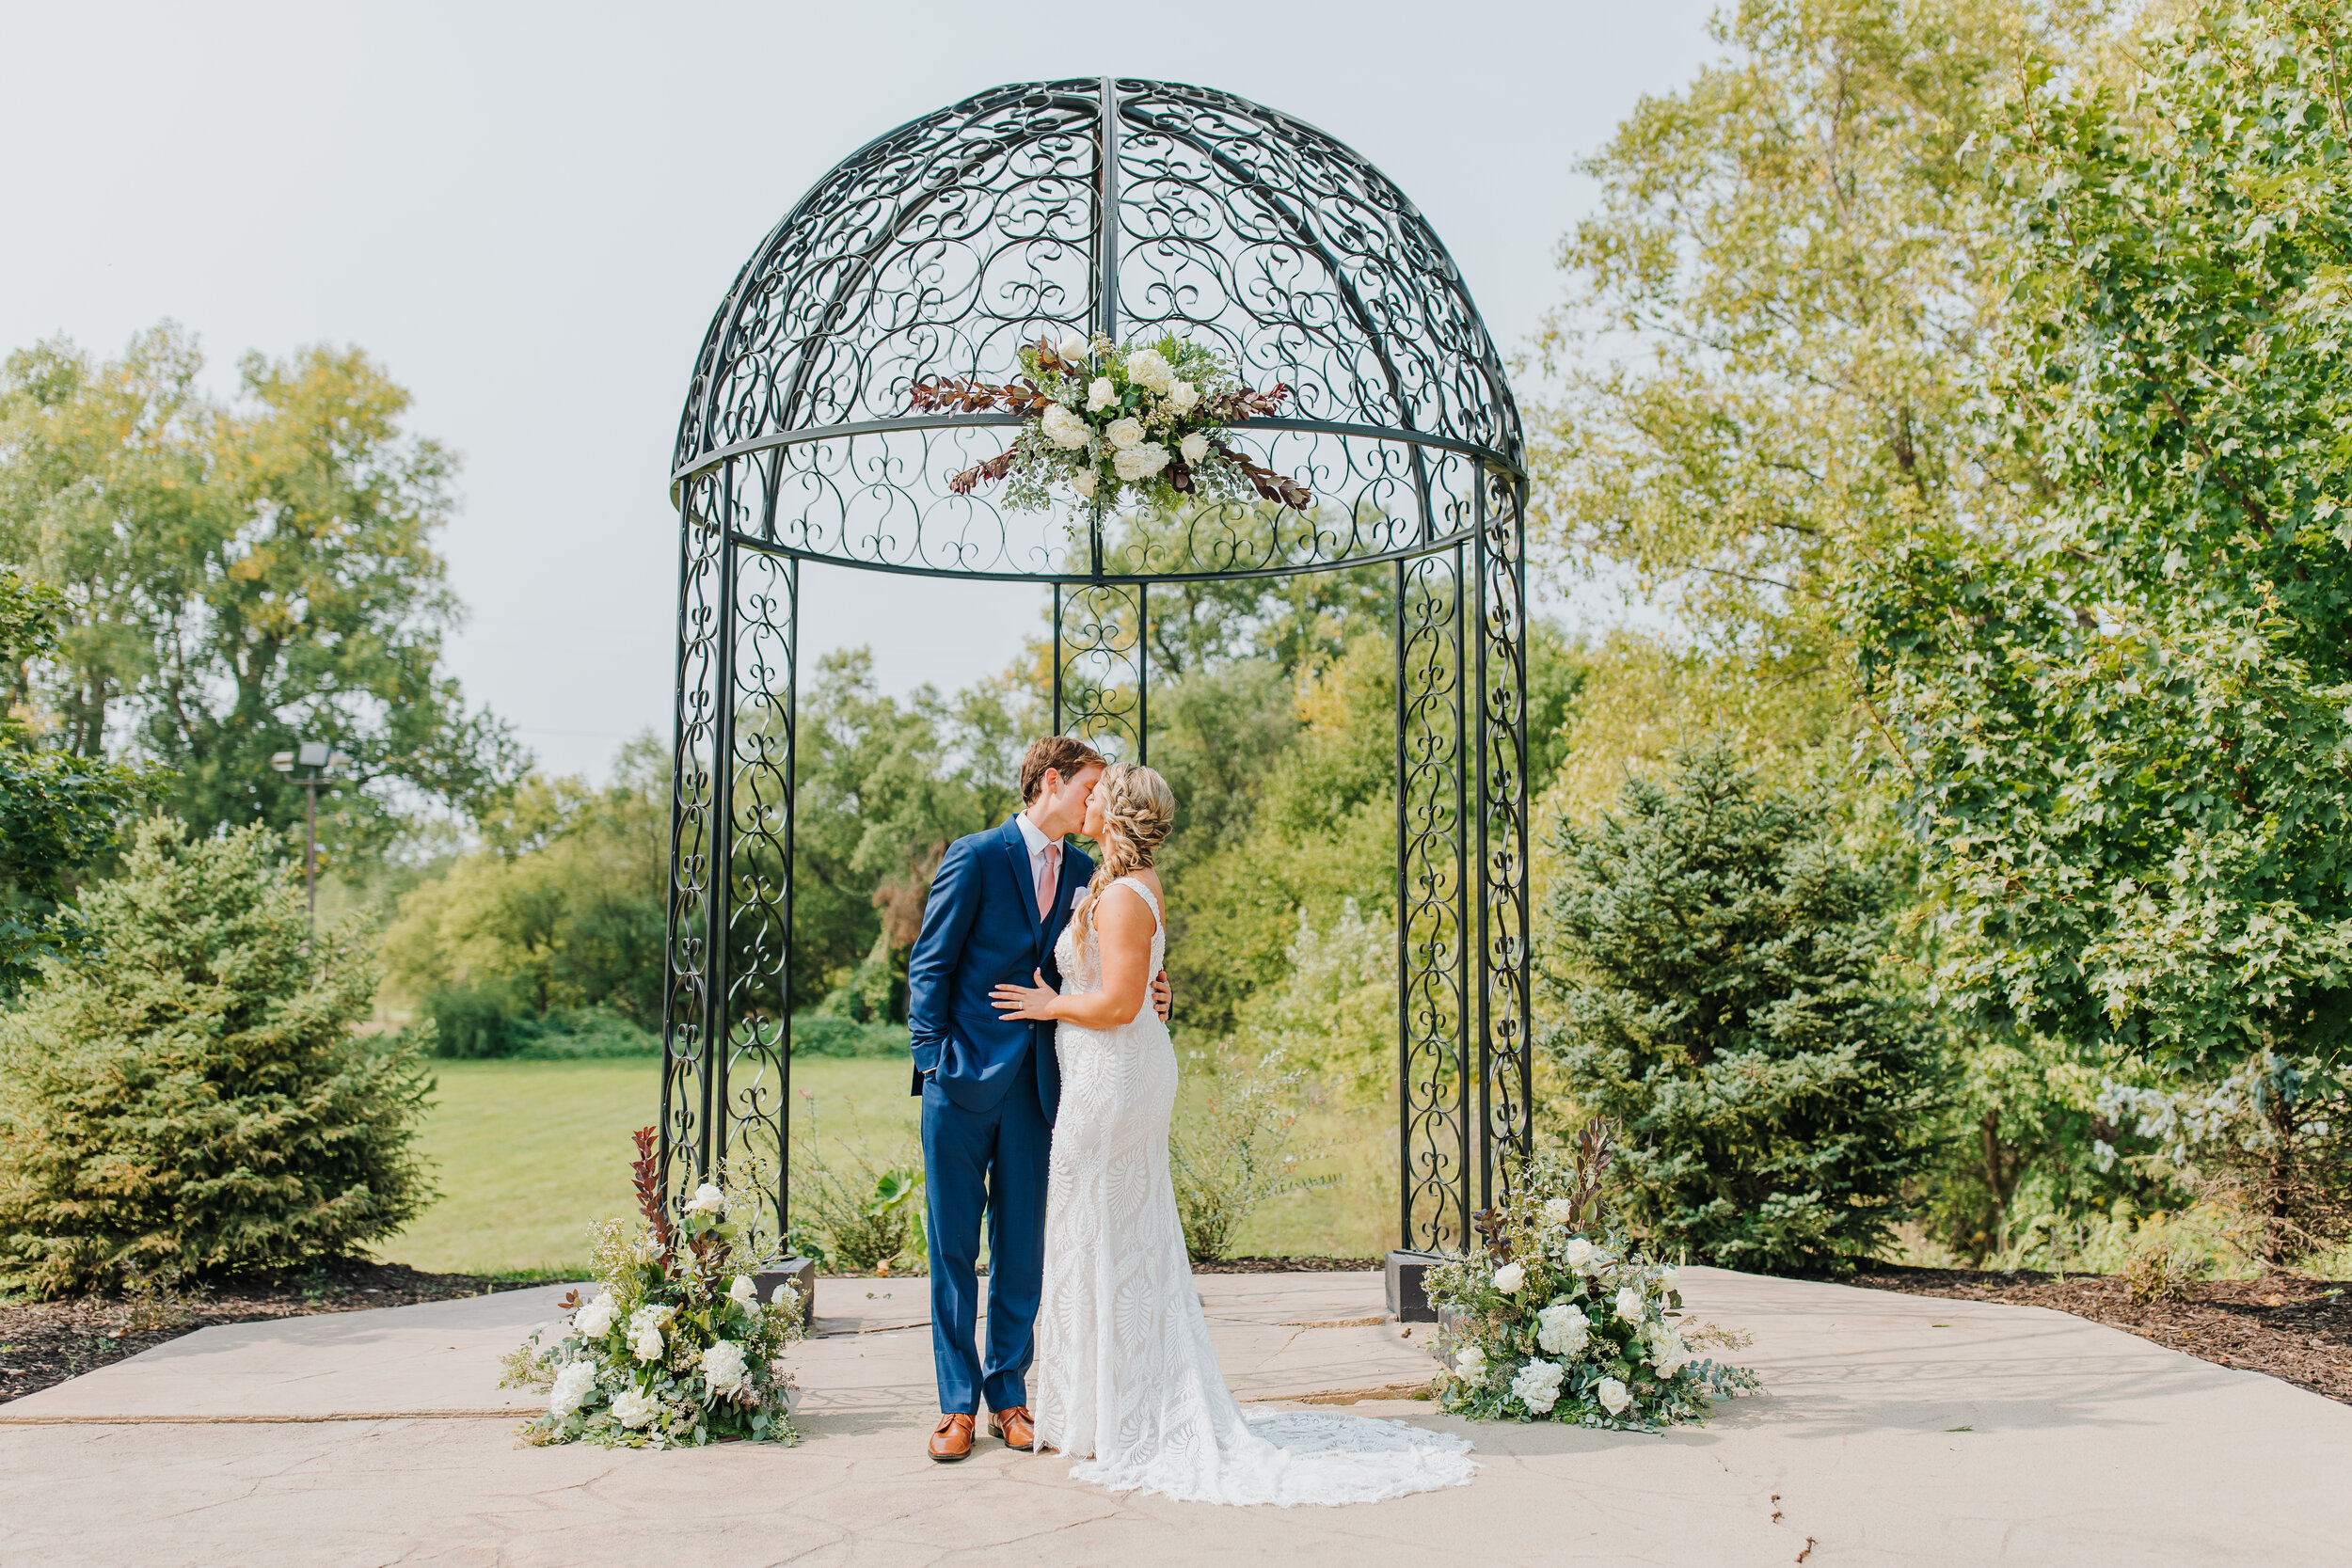 Ashton & Dan - Married - Nathaniel Jensen Photography - Omaha Nebraska Wedding Photographer-141.jpg